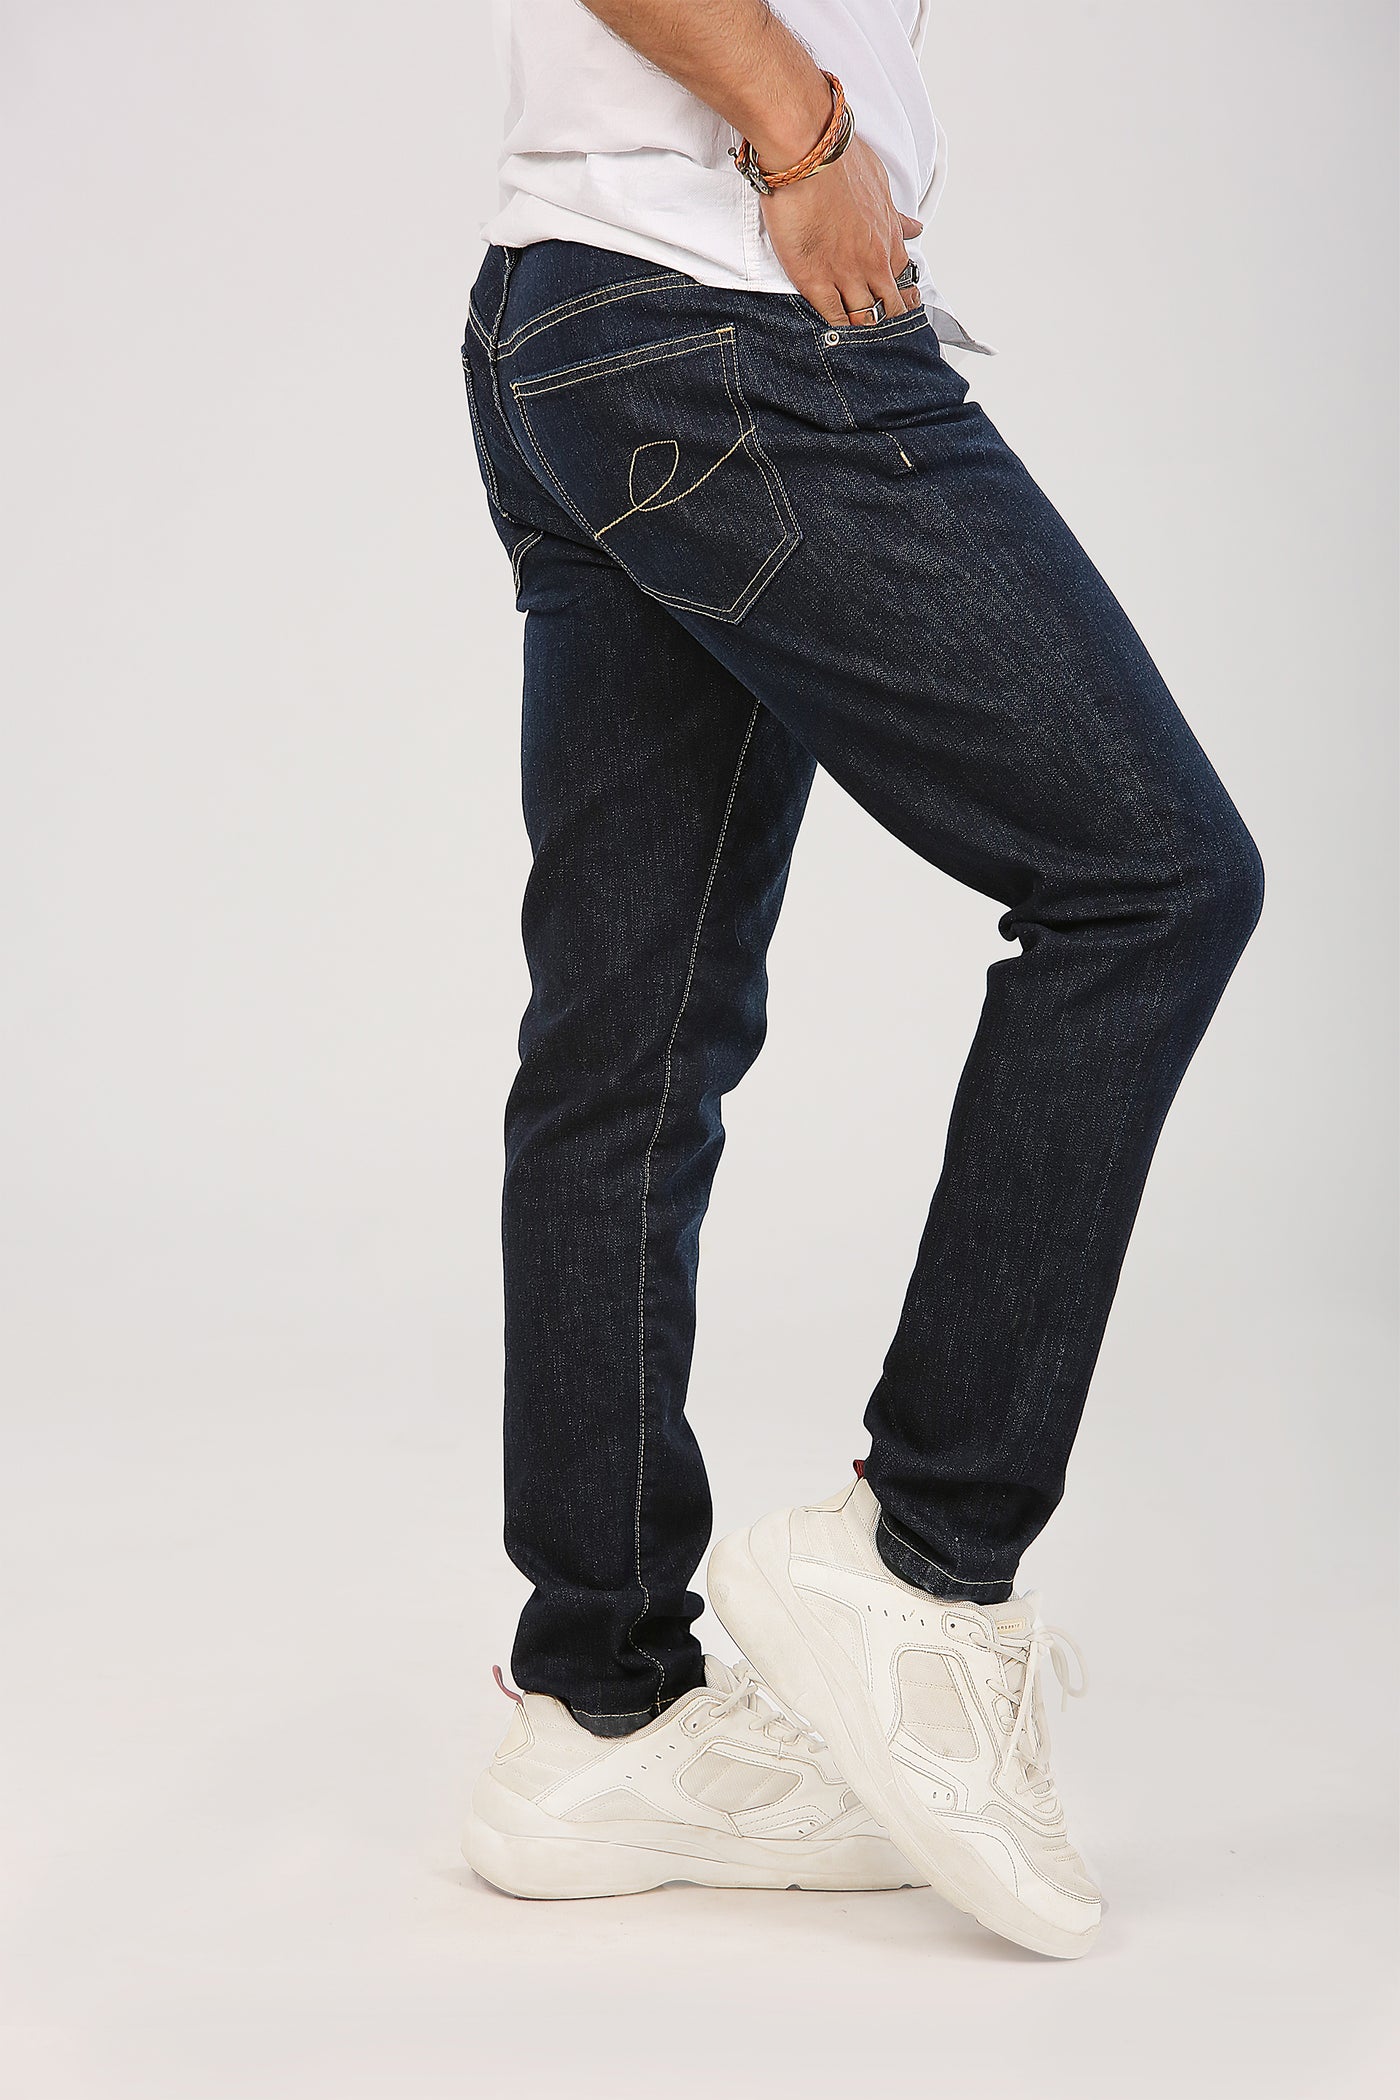 Azr Slim Fit Jeans